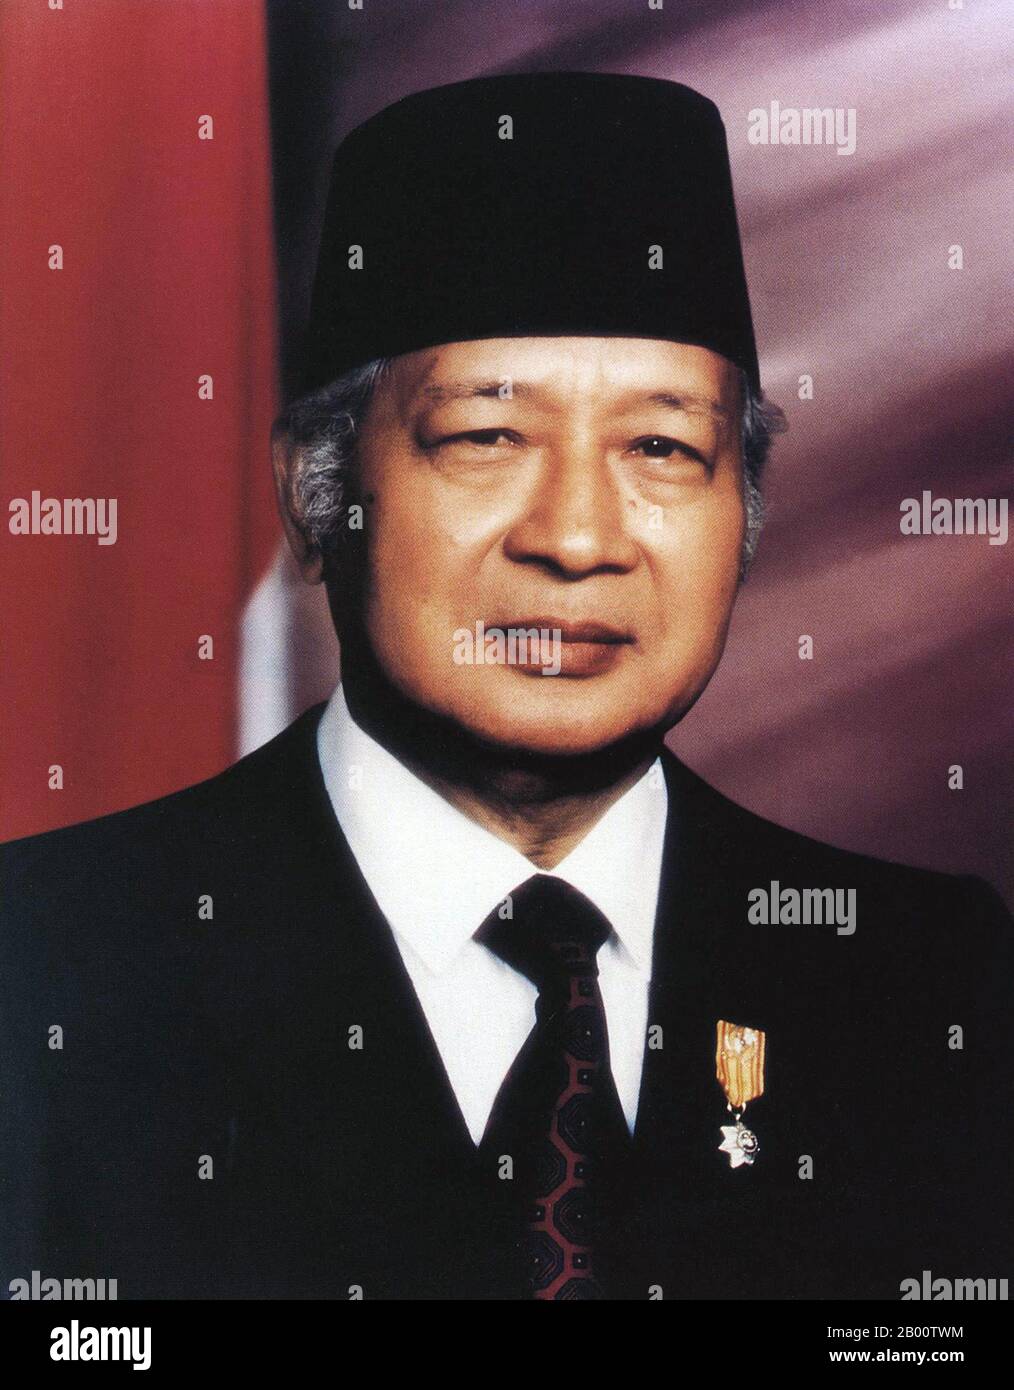 Indonesia: Ritratto ufficiale di Suharto (1921-2008), secondo presidente dell'Indonesia (1967-1998), 1993. Suharto (8 giugno 1921 – 27 gennaio 2008) è stato il secondo presidente dell'Indonesia, che ha avuto la carica per quasi 32 anni, dal 1967 fino alle sue dimissioni nel 1998. Nella letteratura e nei media indonesiani, viene spesso chiamato Pak HARto. Figlio dei carestieri di Yogyakarta, Suharto si unì alla lotta per l'indipendenza dagli olandesi come giovane. Salendo al rango di maggiore generale nell'esercito indonesiano, Suharto contribuì a condurre una purga anti-comunista nel 1965 che portò a lui e ai militari a prendere il controllo. Foto Stock